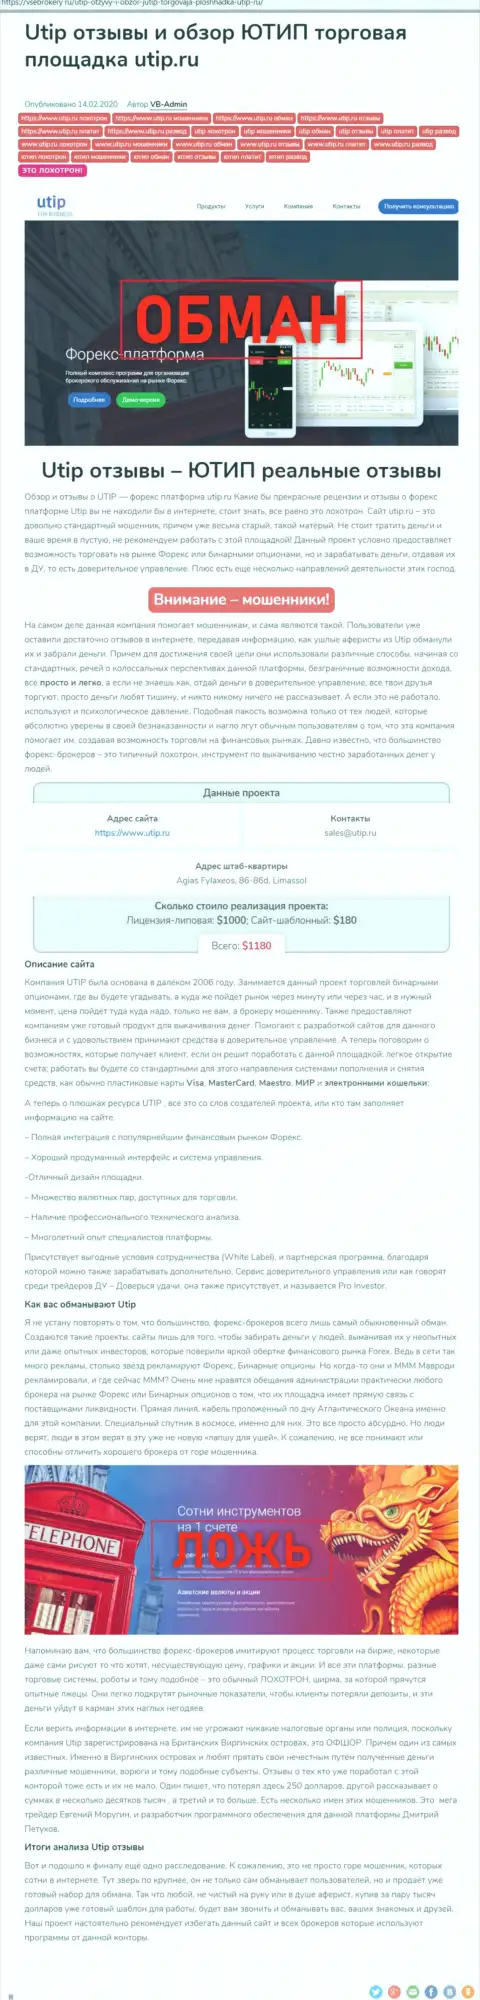 Обзор деяний scam-компании UTIP Org - это МОШЕННИКИ !!!